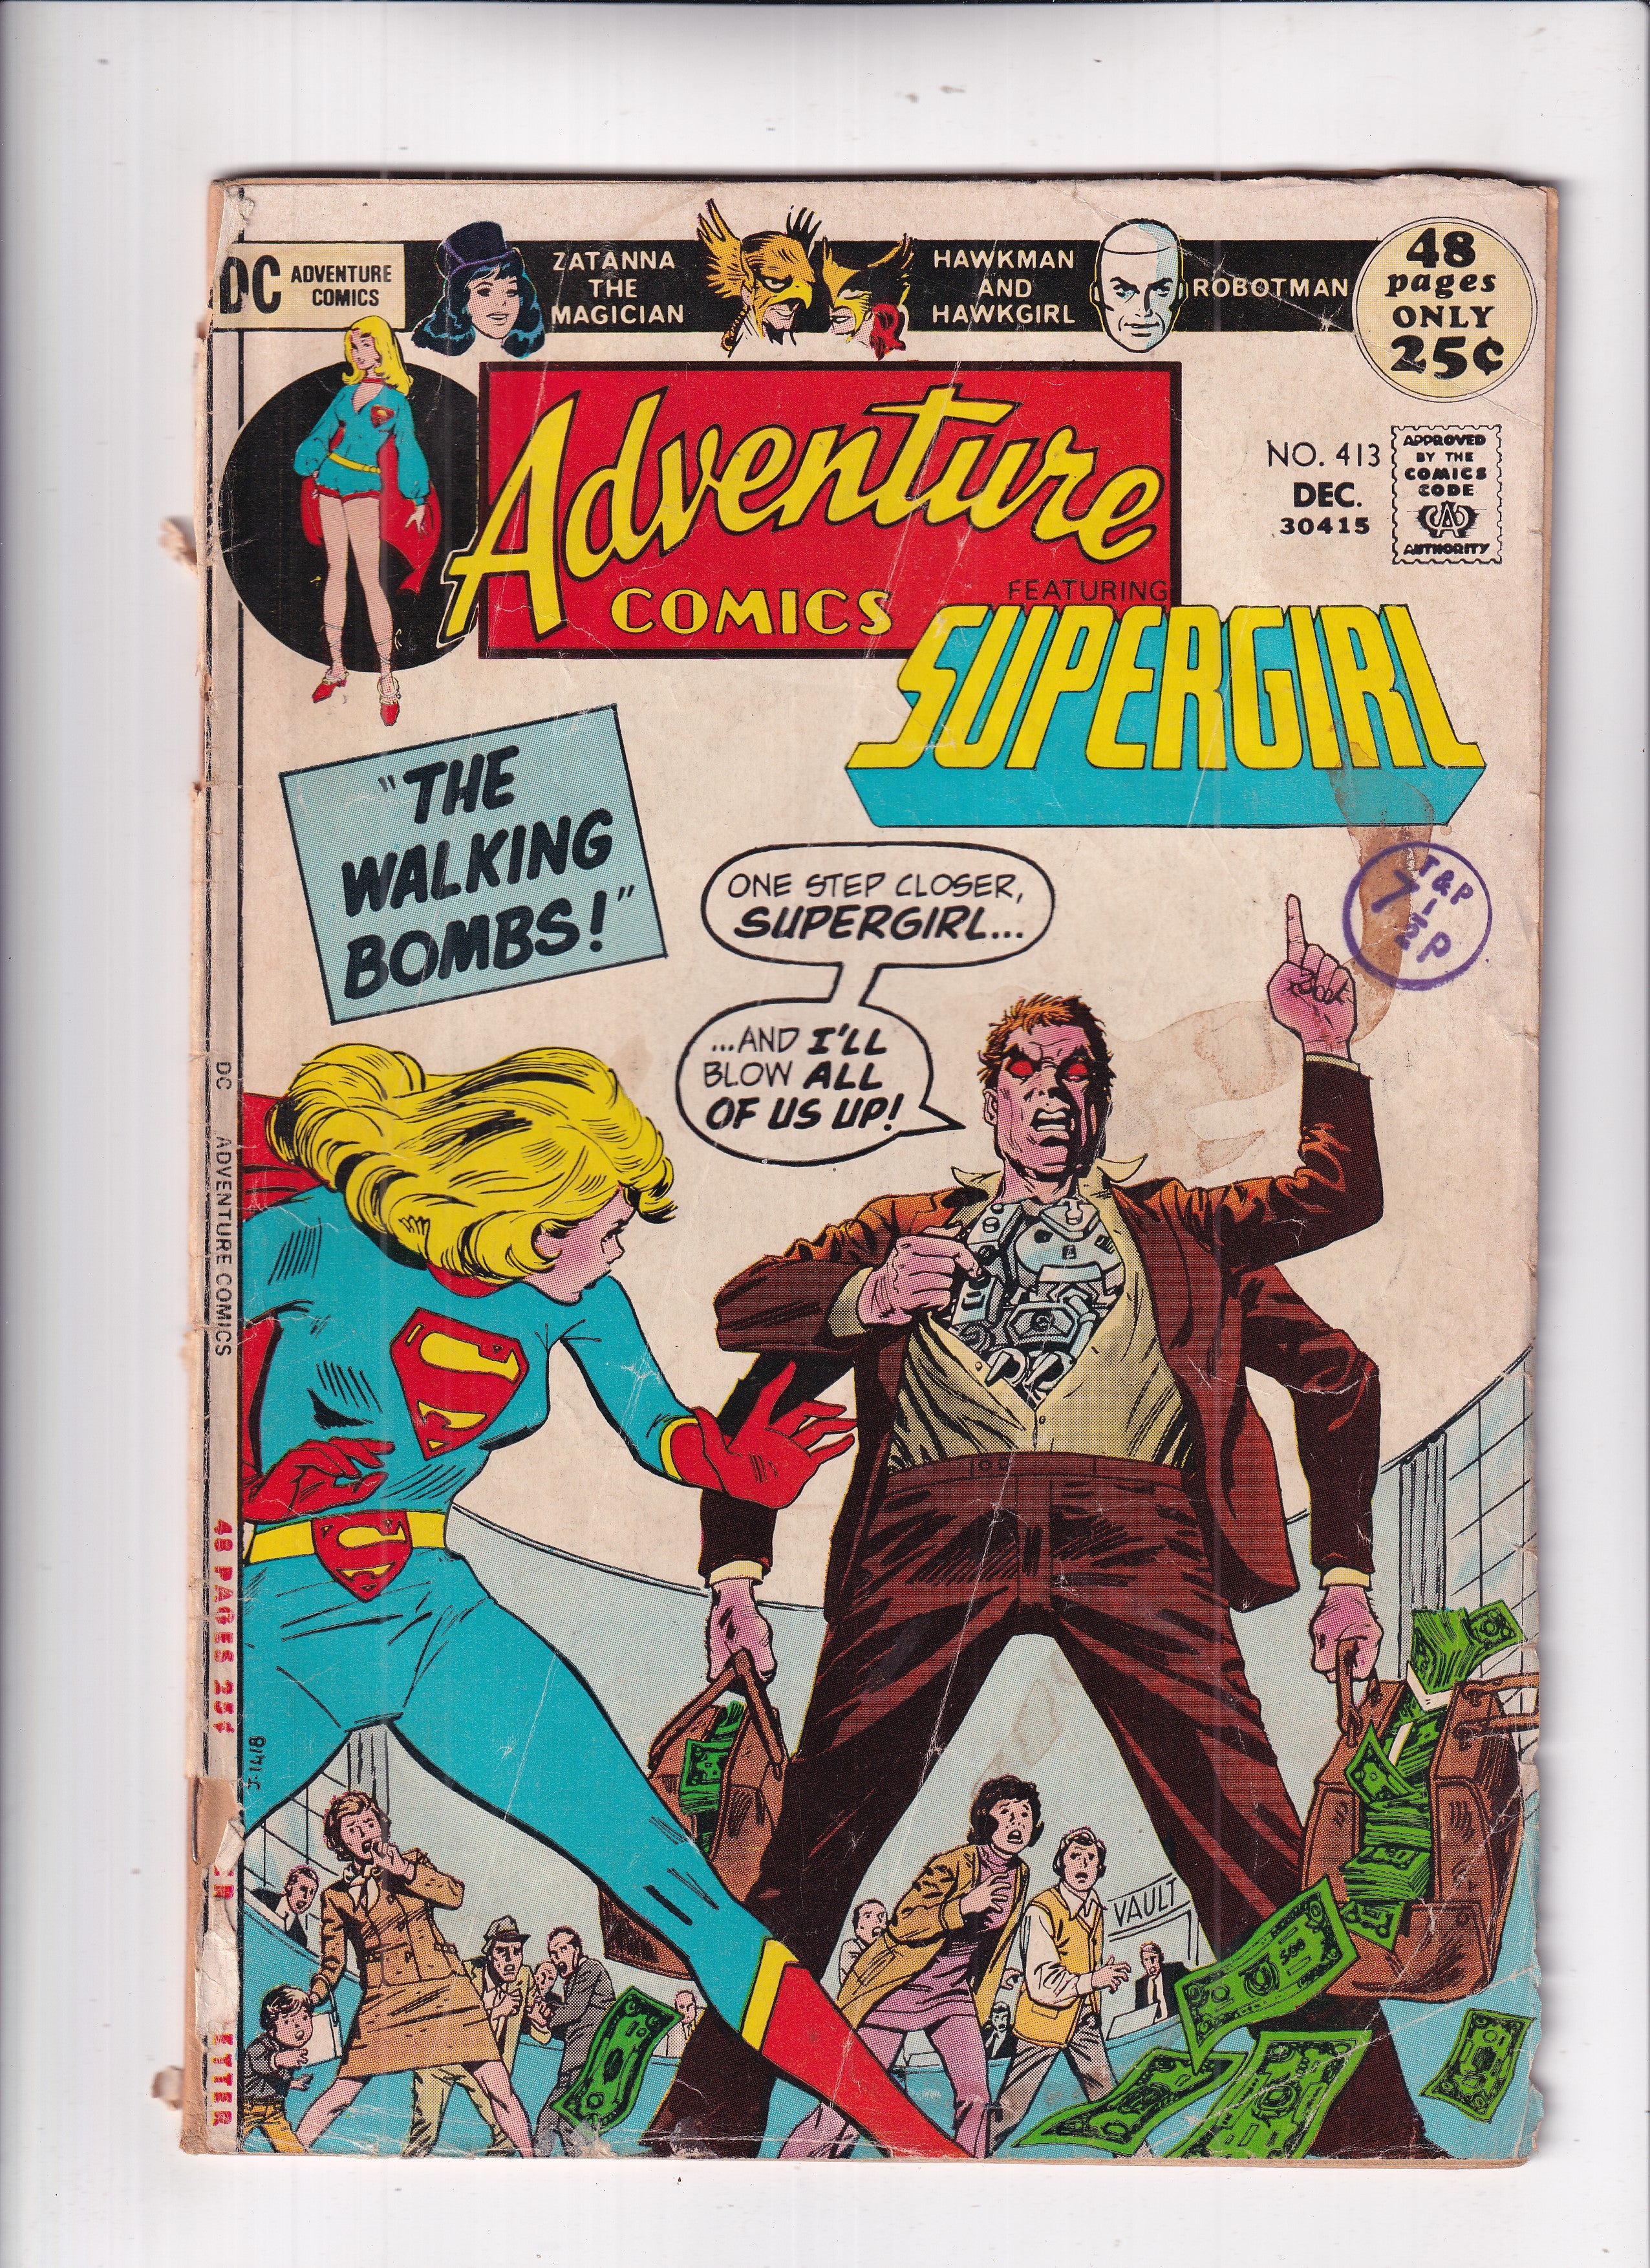 Adventure Comics #413 (Detached Cover)